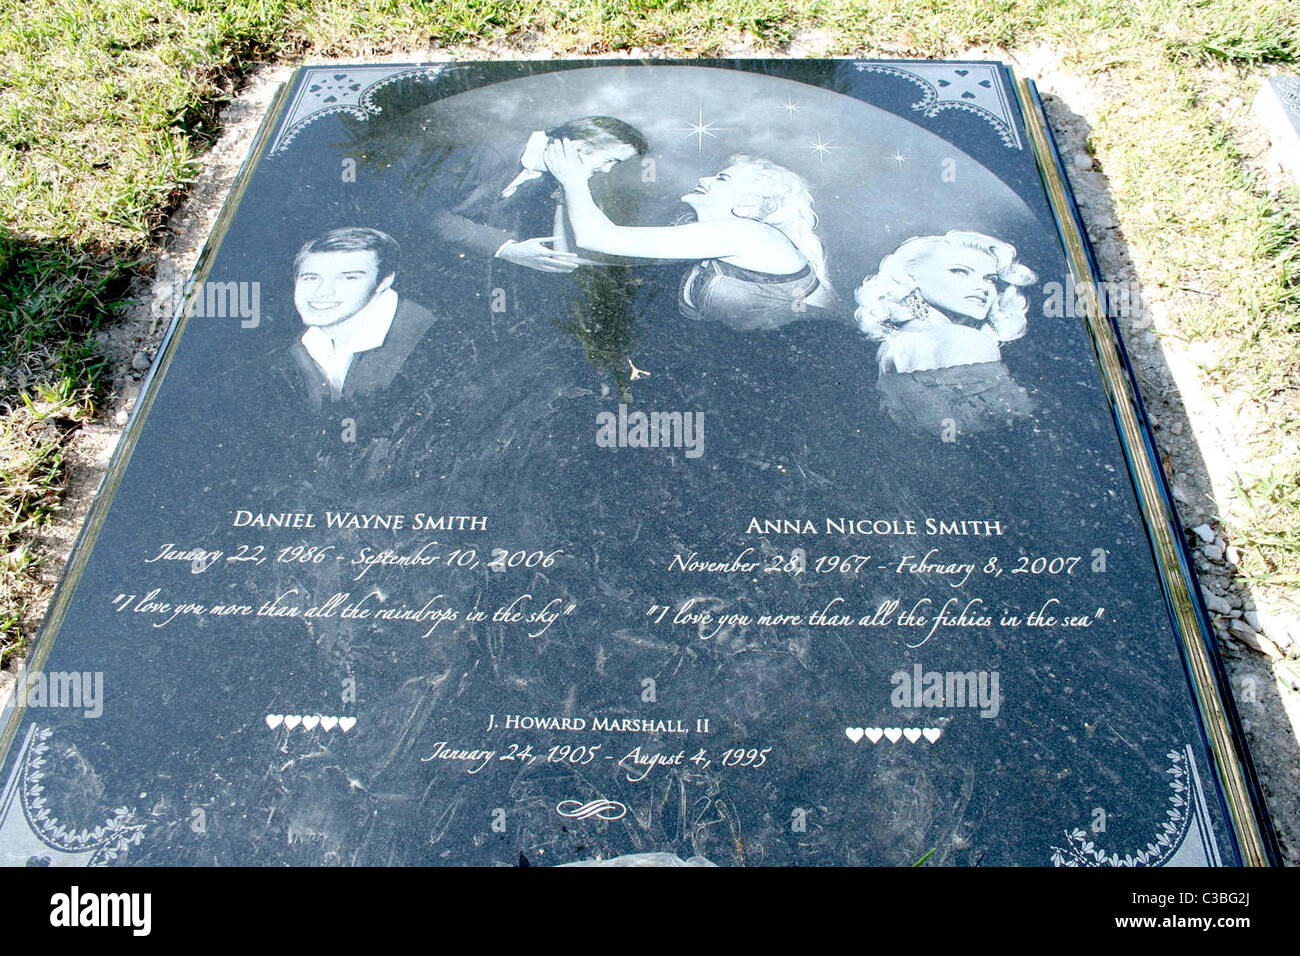 Anna Nicole Smith Nuevo Y Grave De La Fallecida Anna Nicole Smith En El 8716